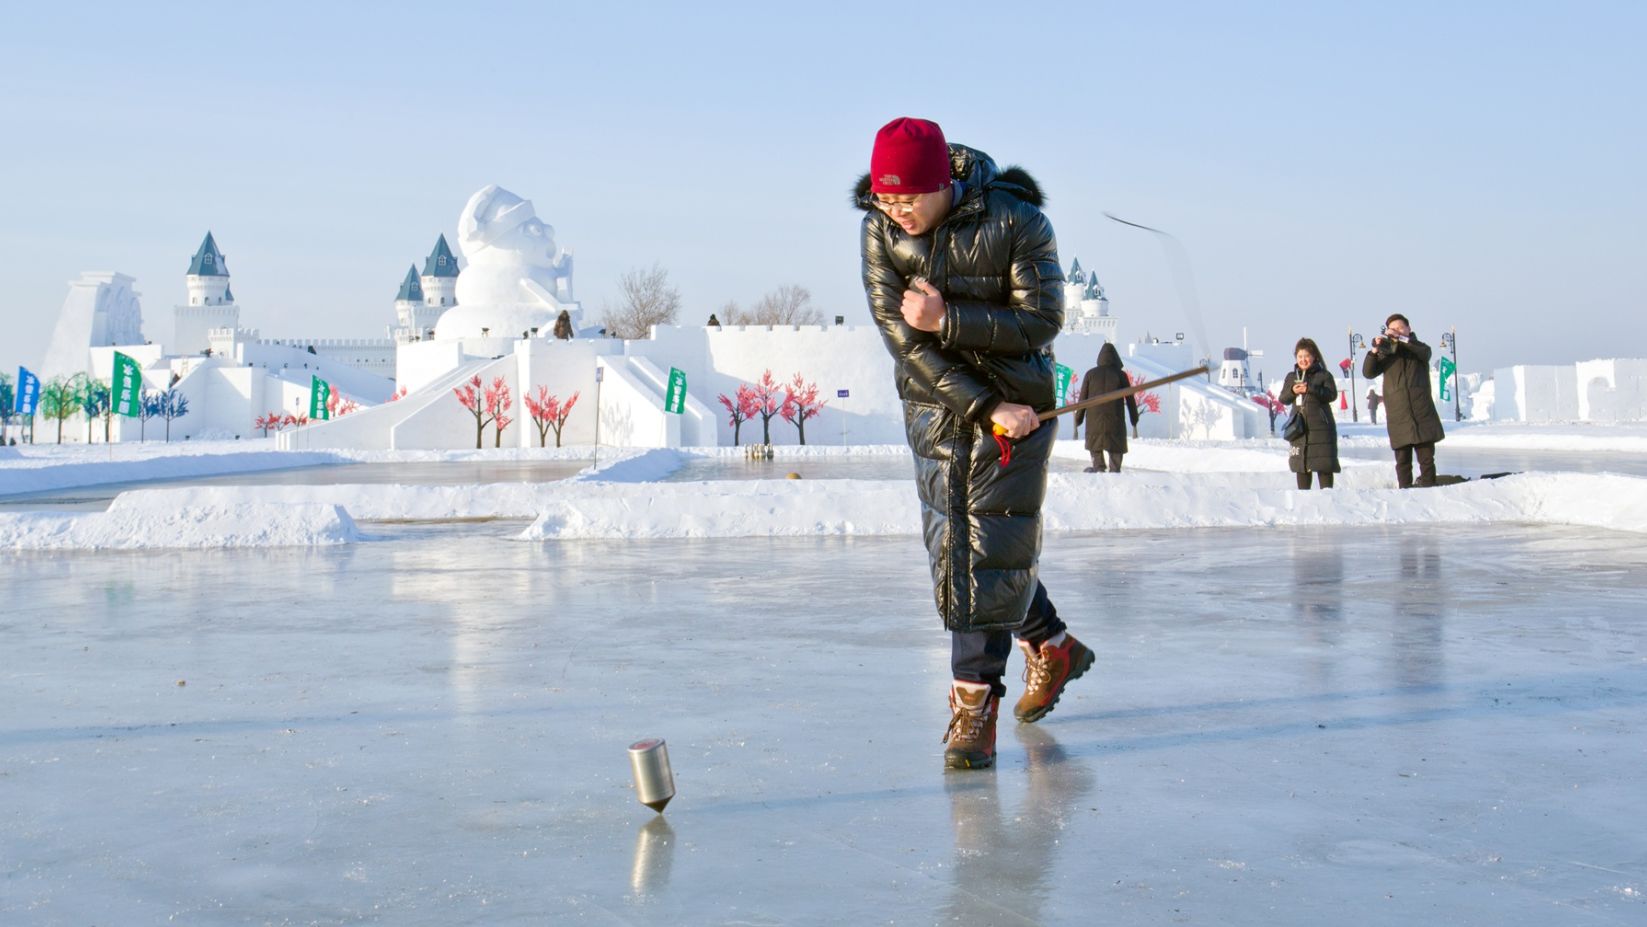 长春市民大年初四看雪雕 滑出溜滑 打冰嘎-中国吉林网